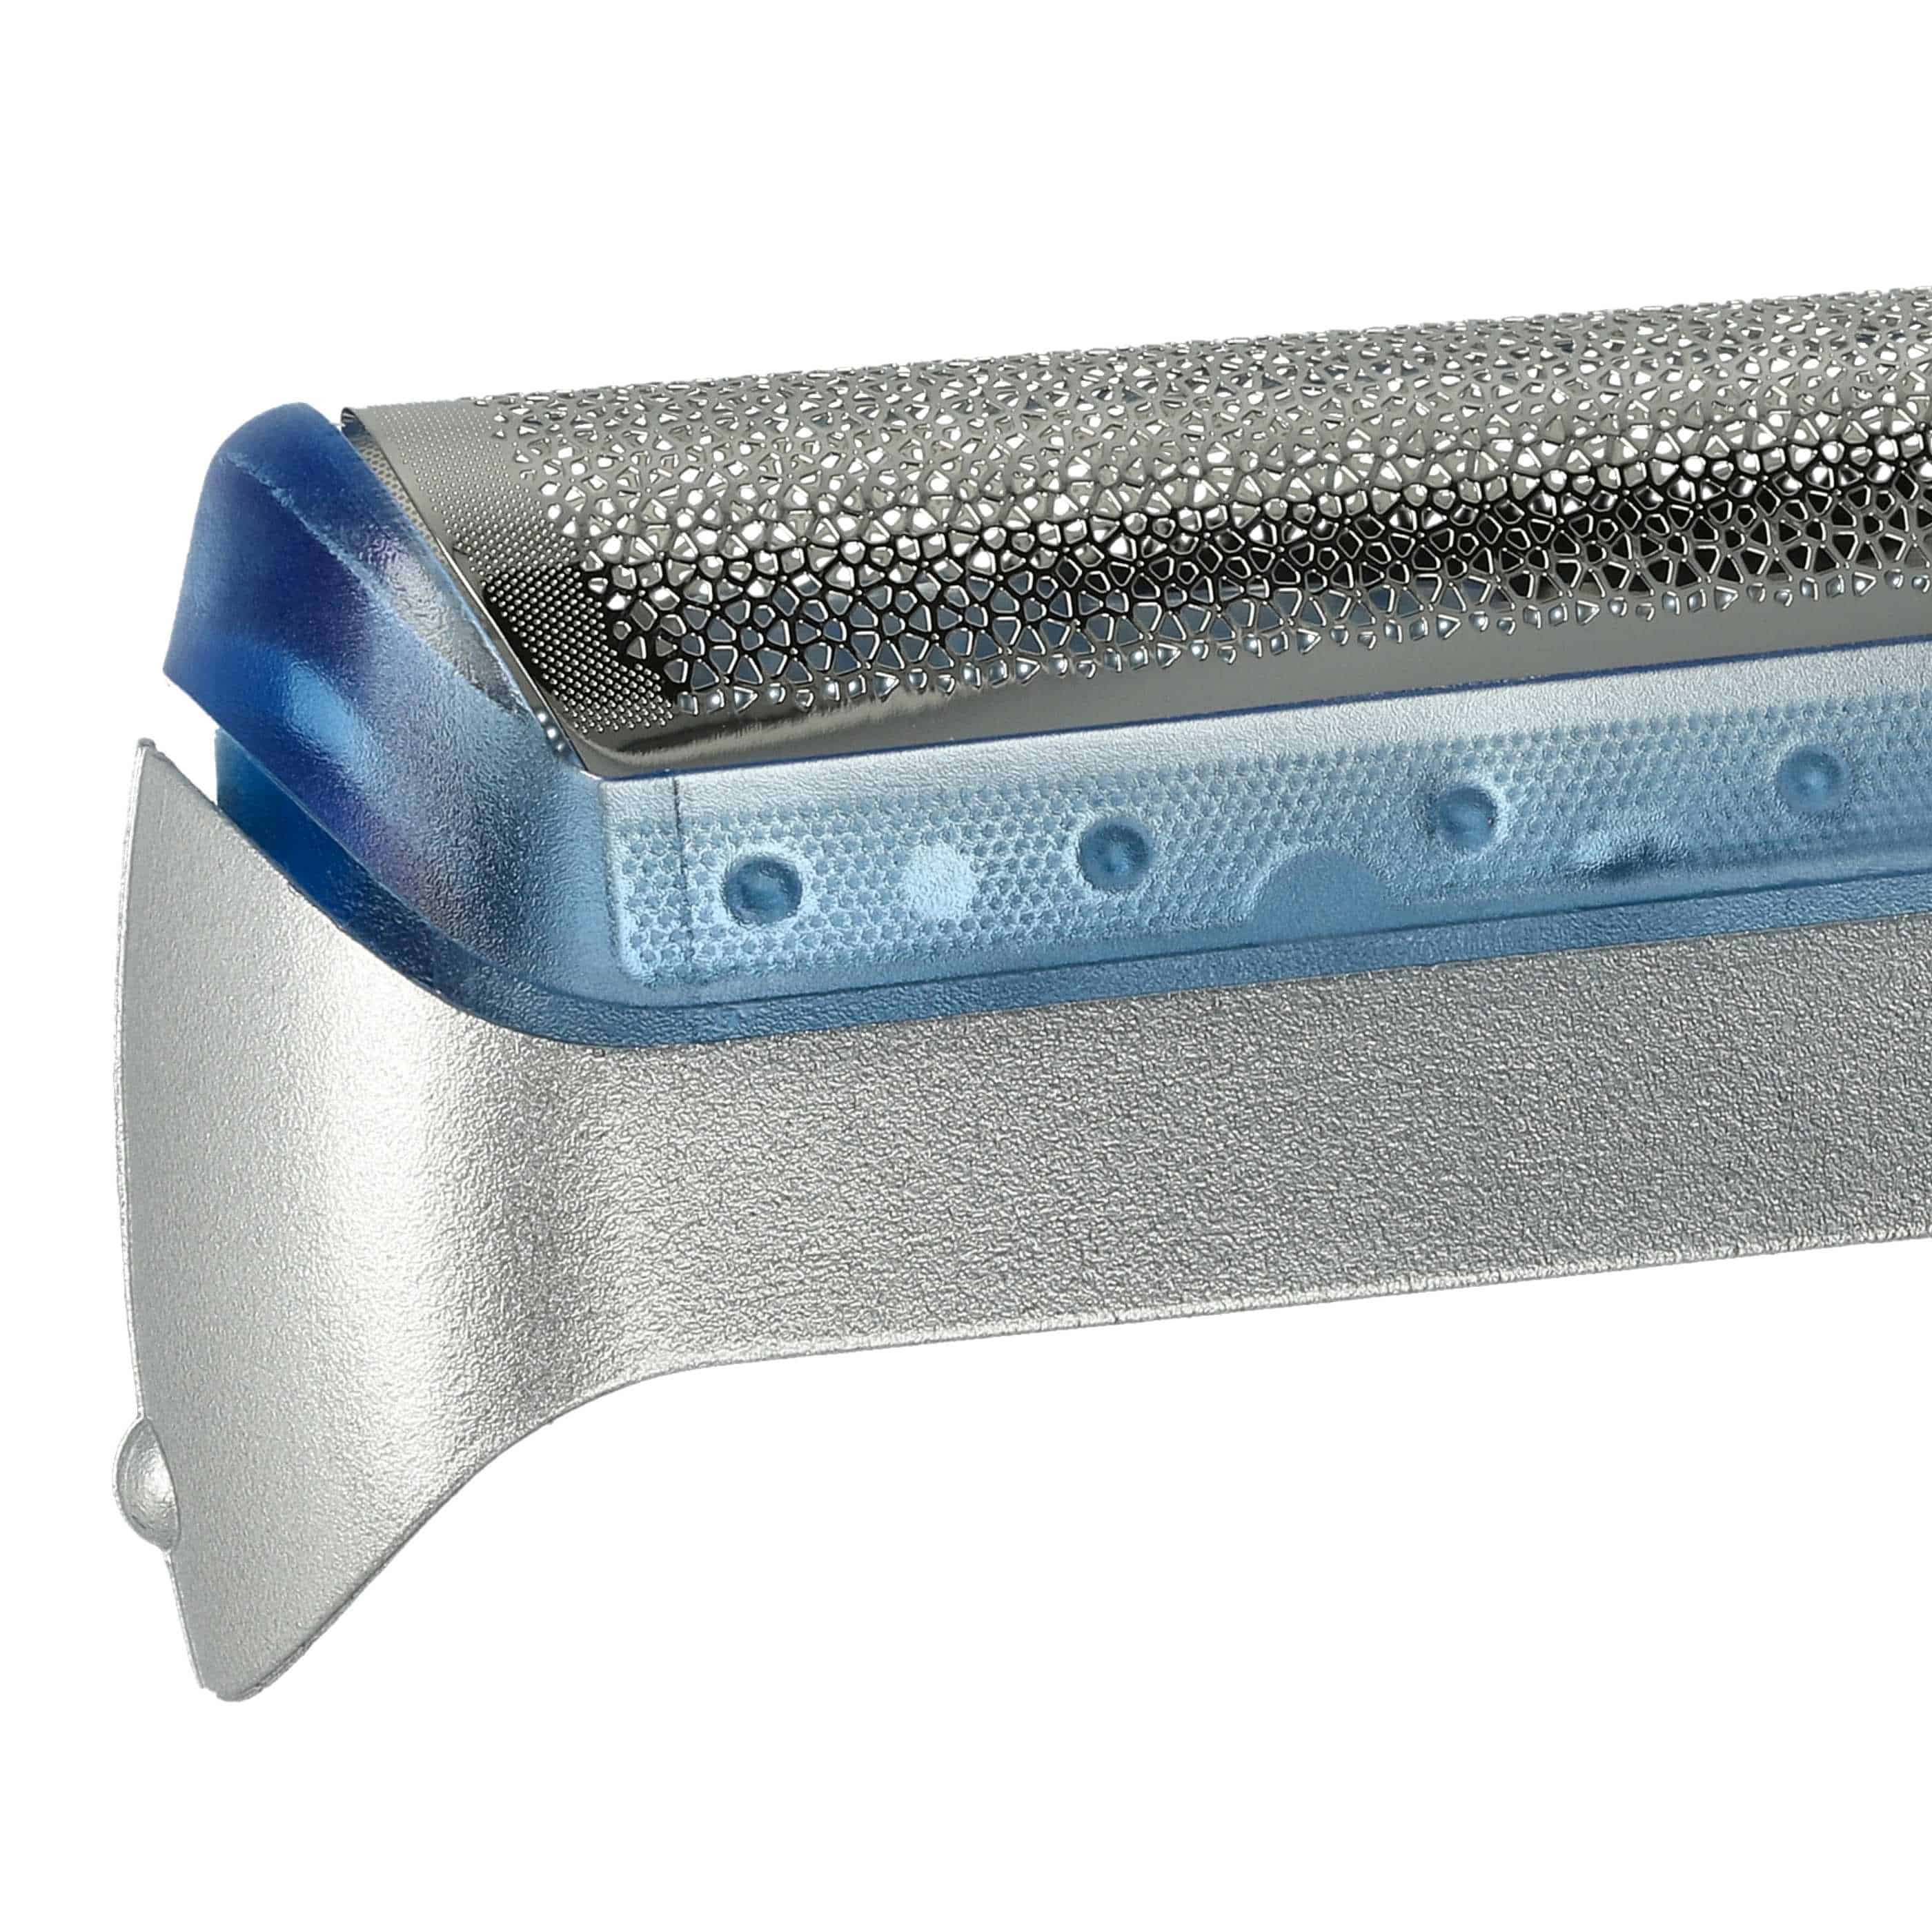 Lámina de corte reemplaza Braun 20S para afeitadoras Braun - incl. marco, plata/azul